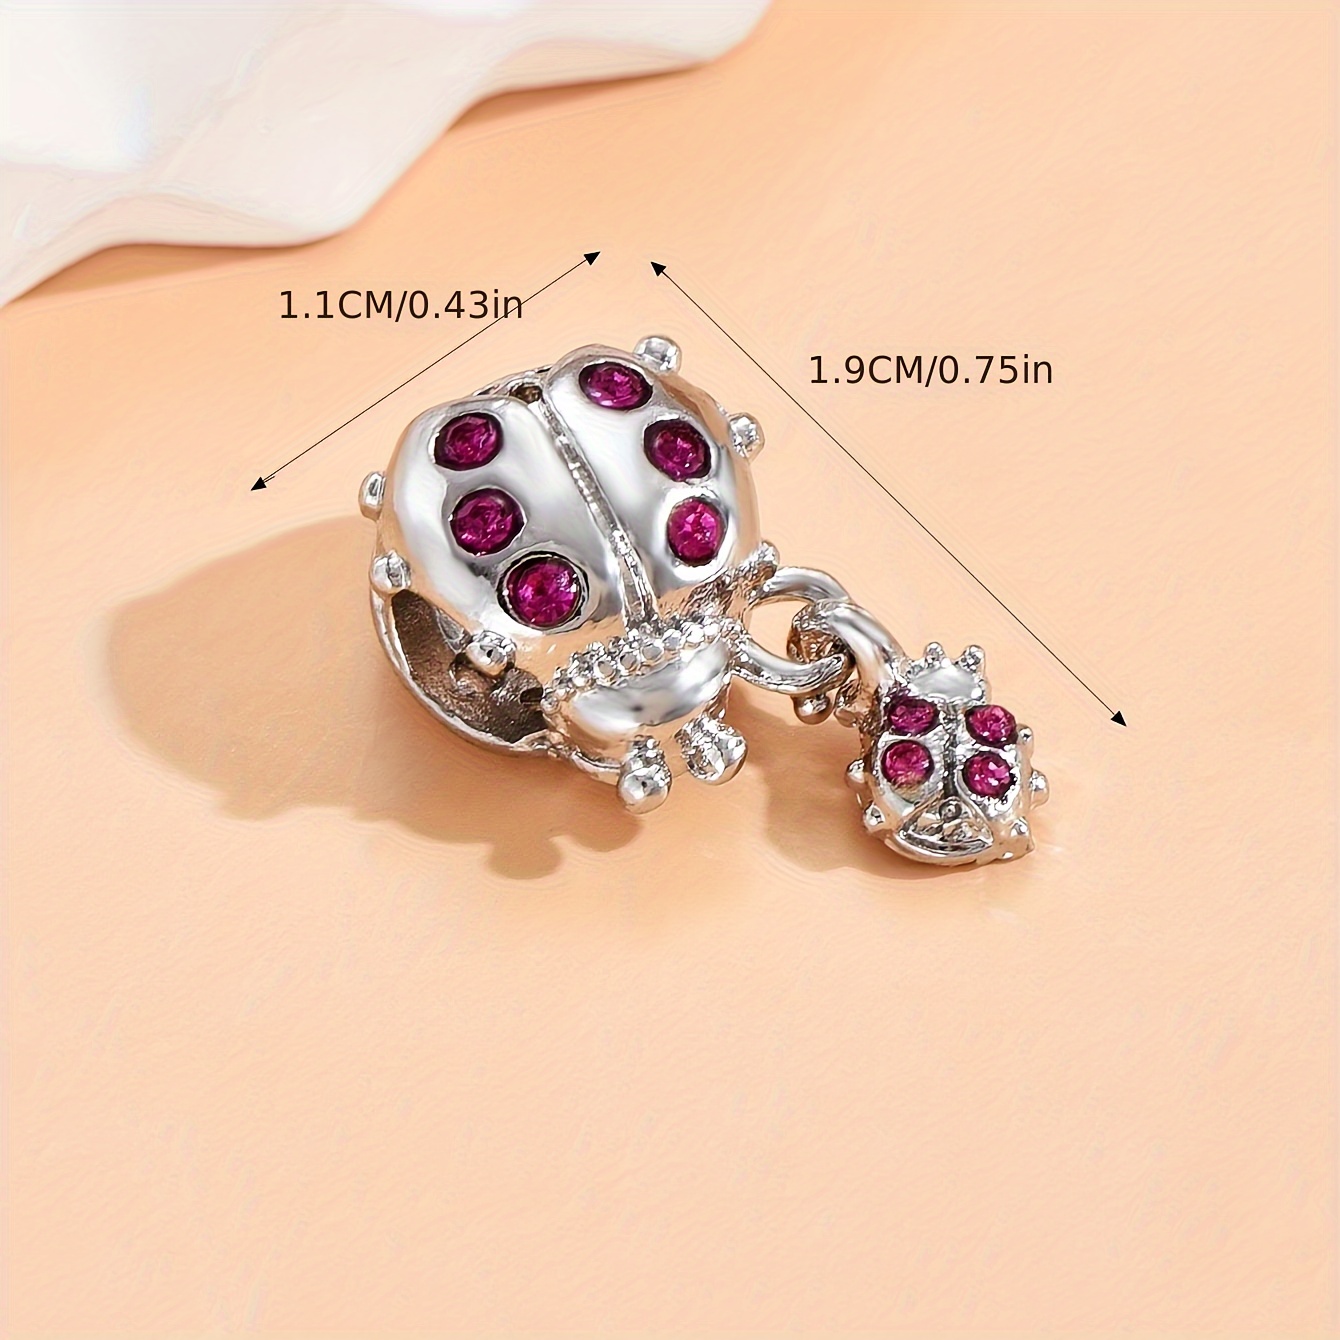 Ladybug Charm Necklace And Bracelet Set